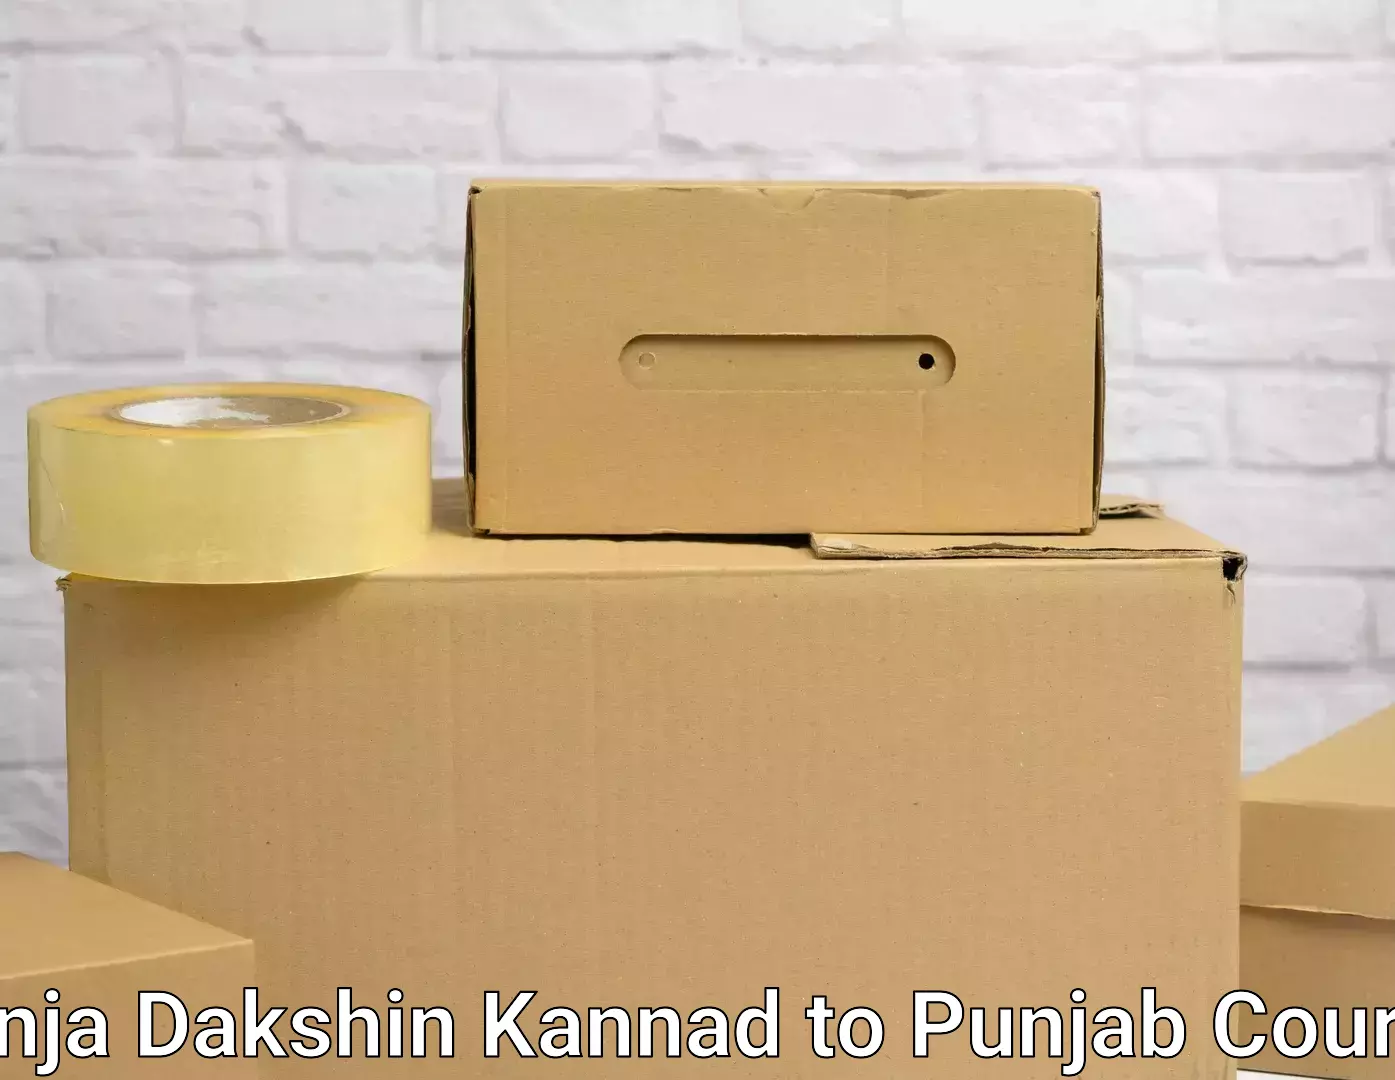 Furniture moving and handling Panja Dakshin Kannad to Malerkotla